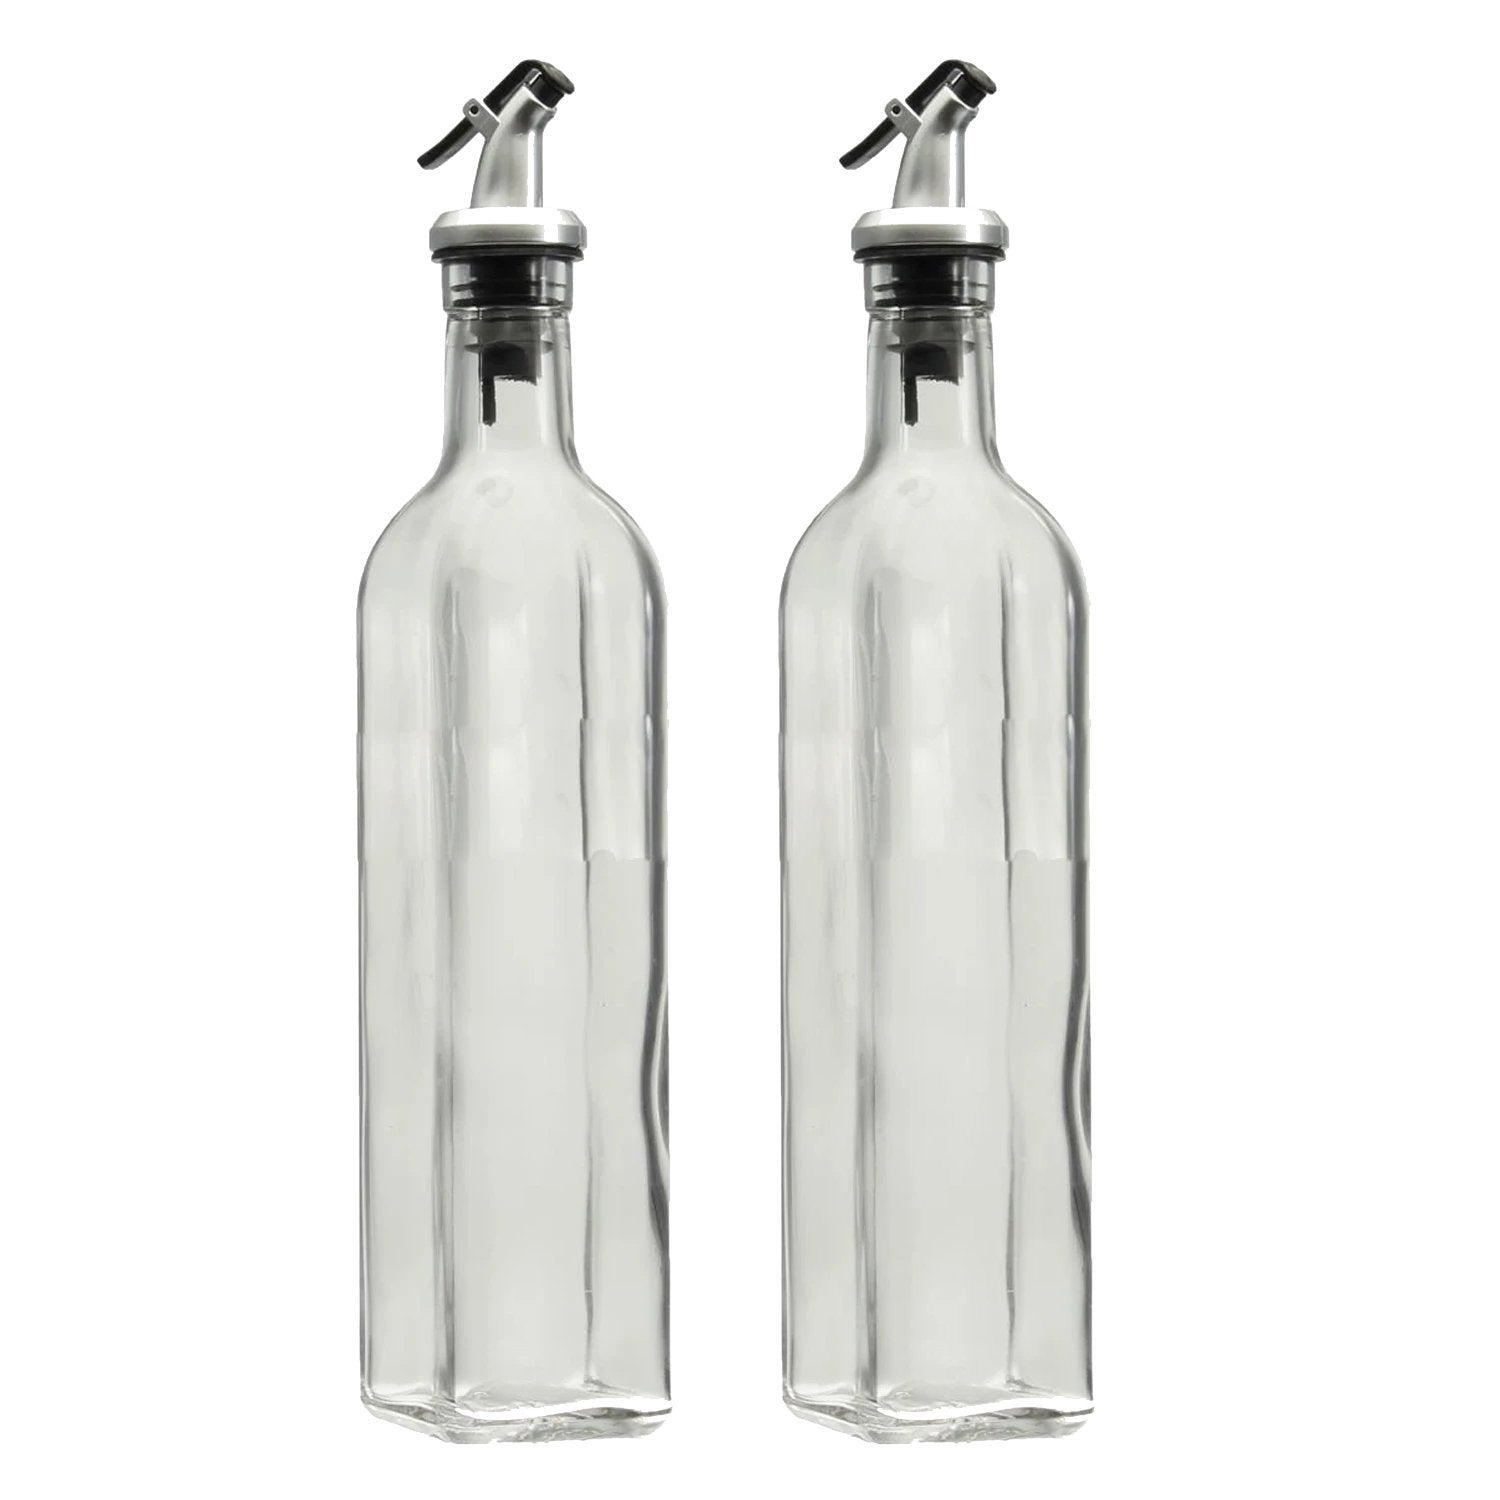 Cooking Oil Glass Bottle Dispenser - 500ml